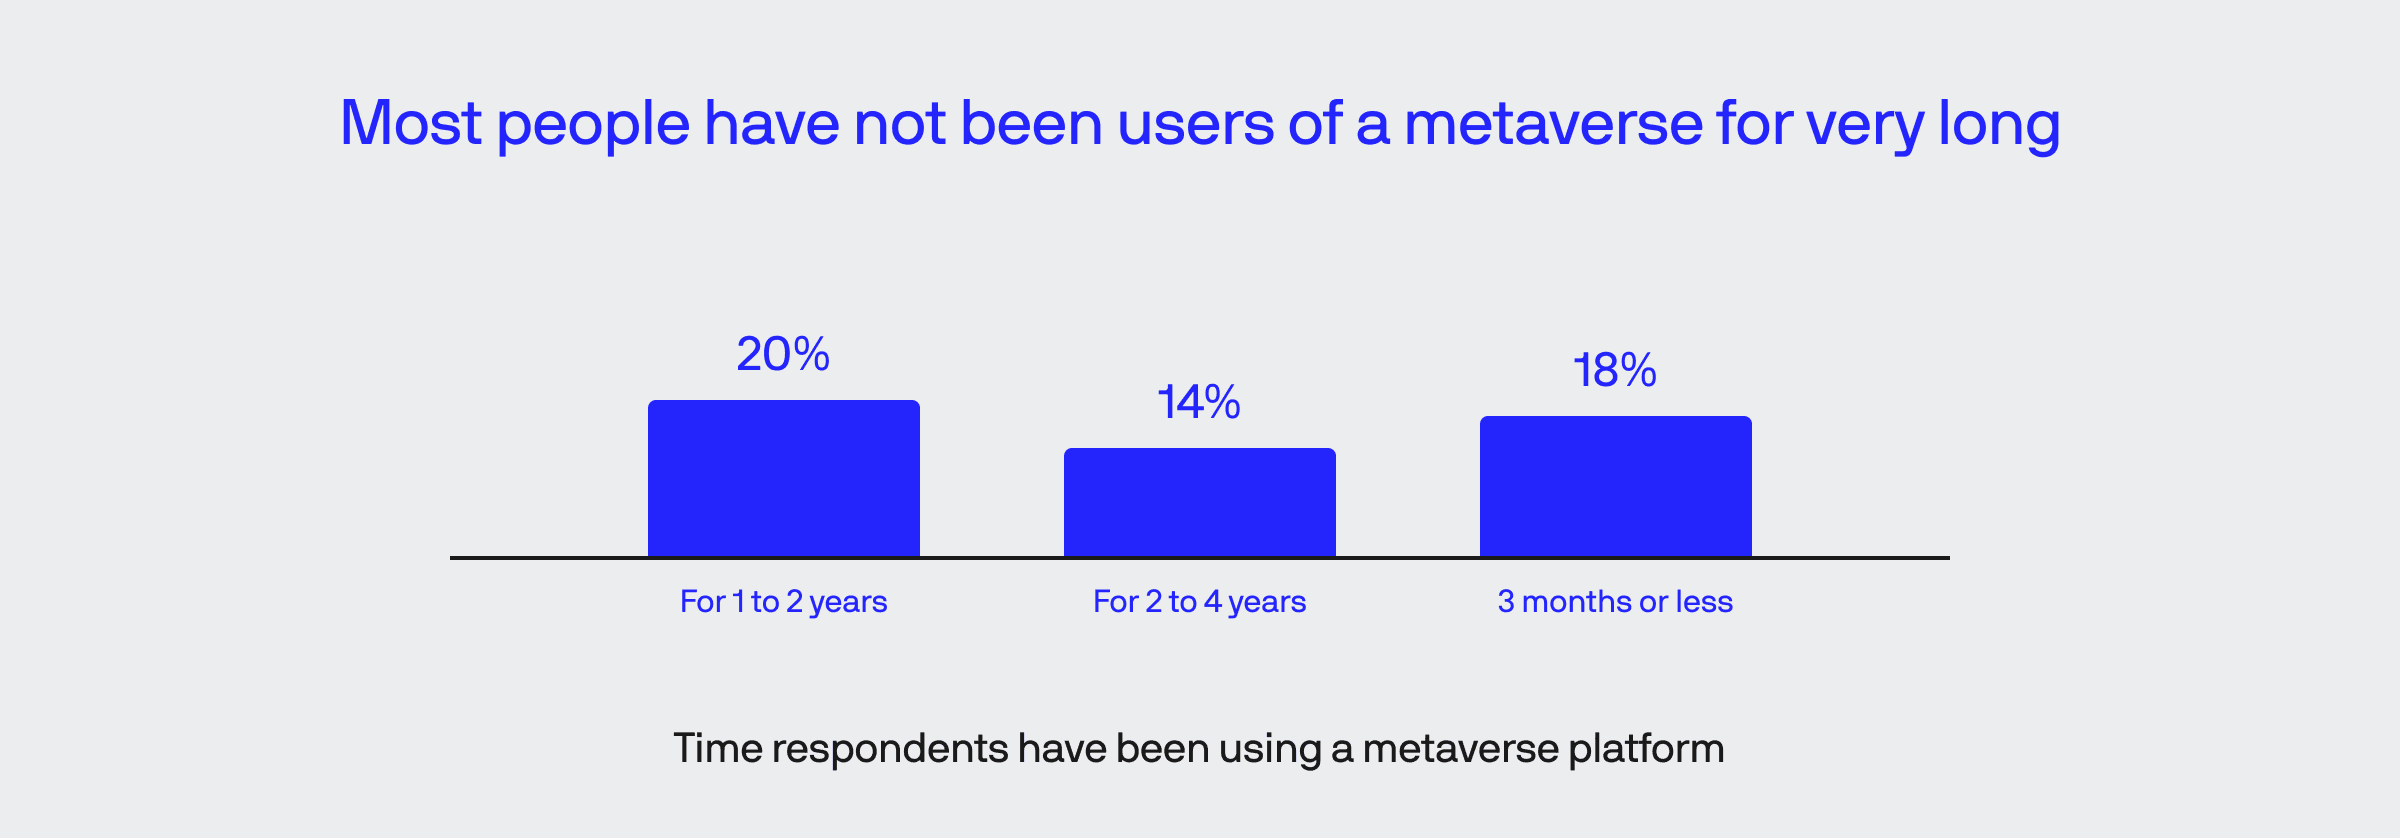 metaverse survey